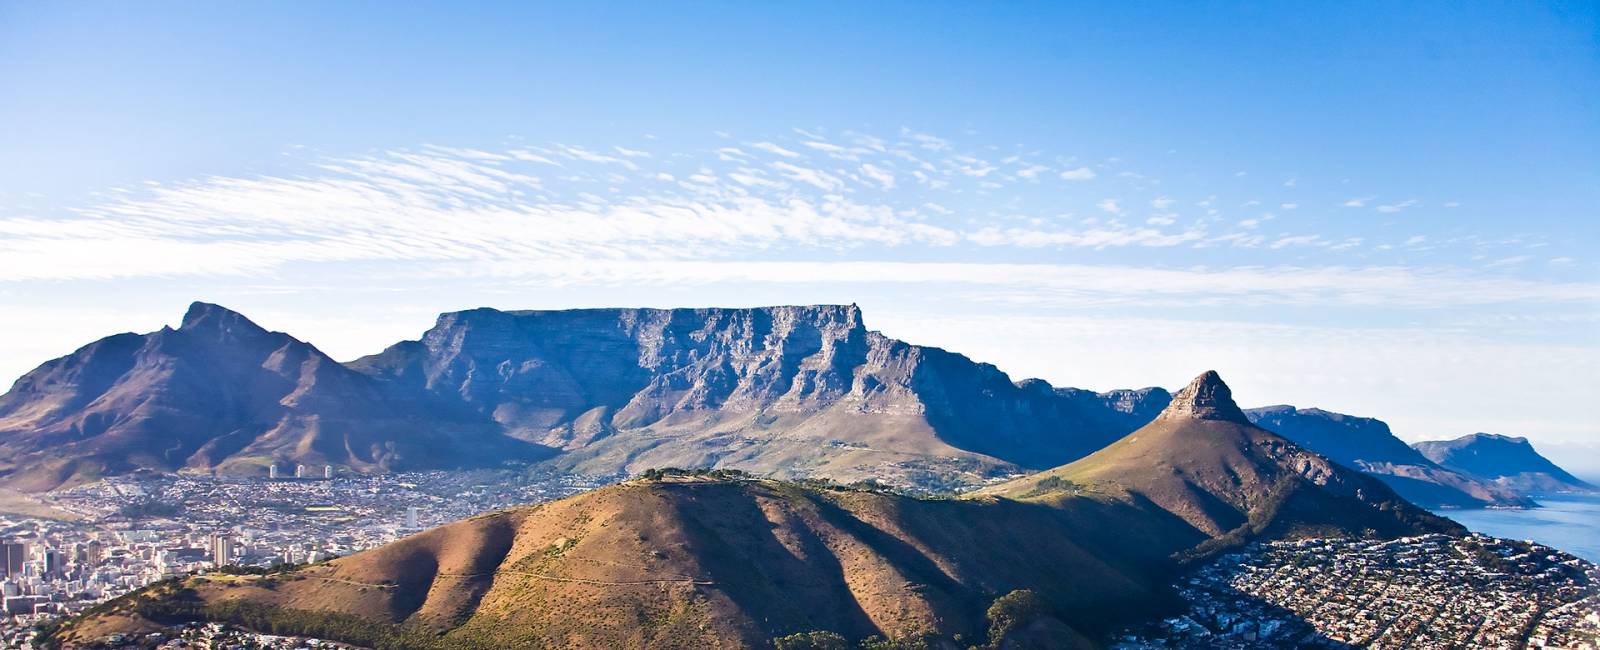 Vy över berg och hus i Kapstaden, Sydafrika